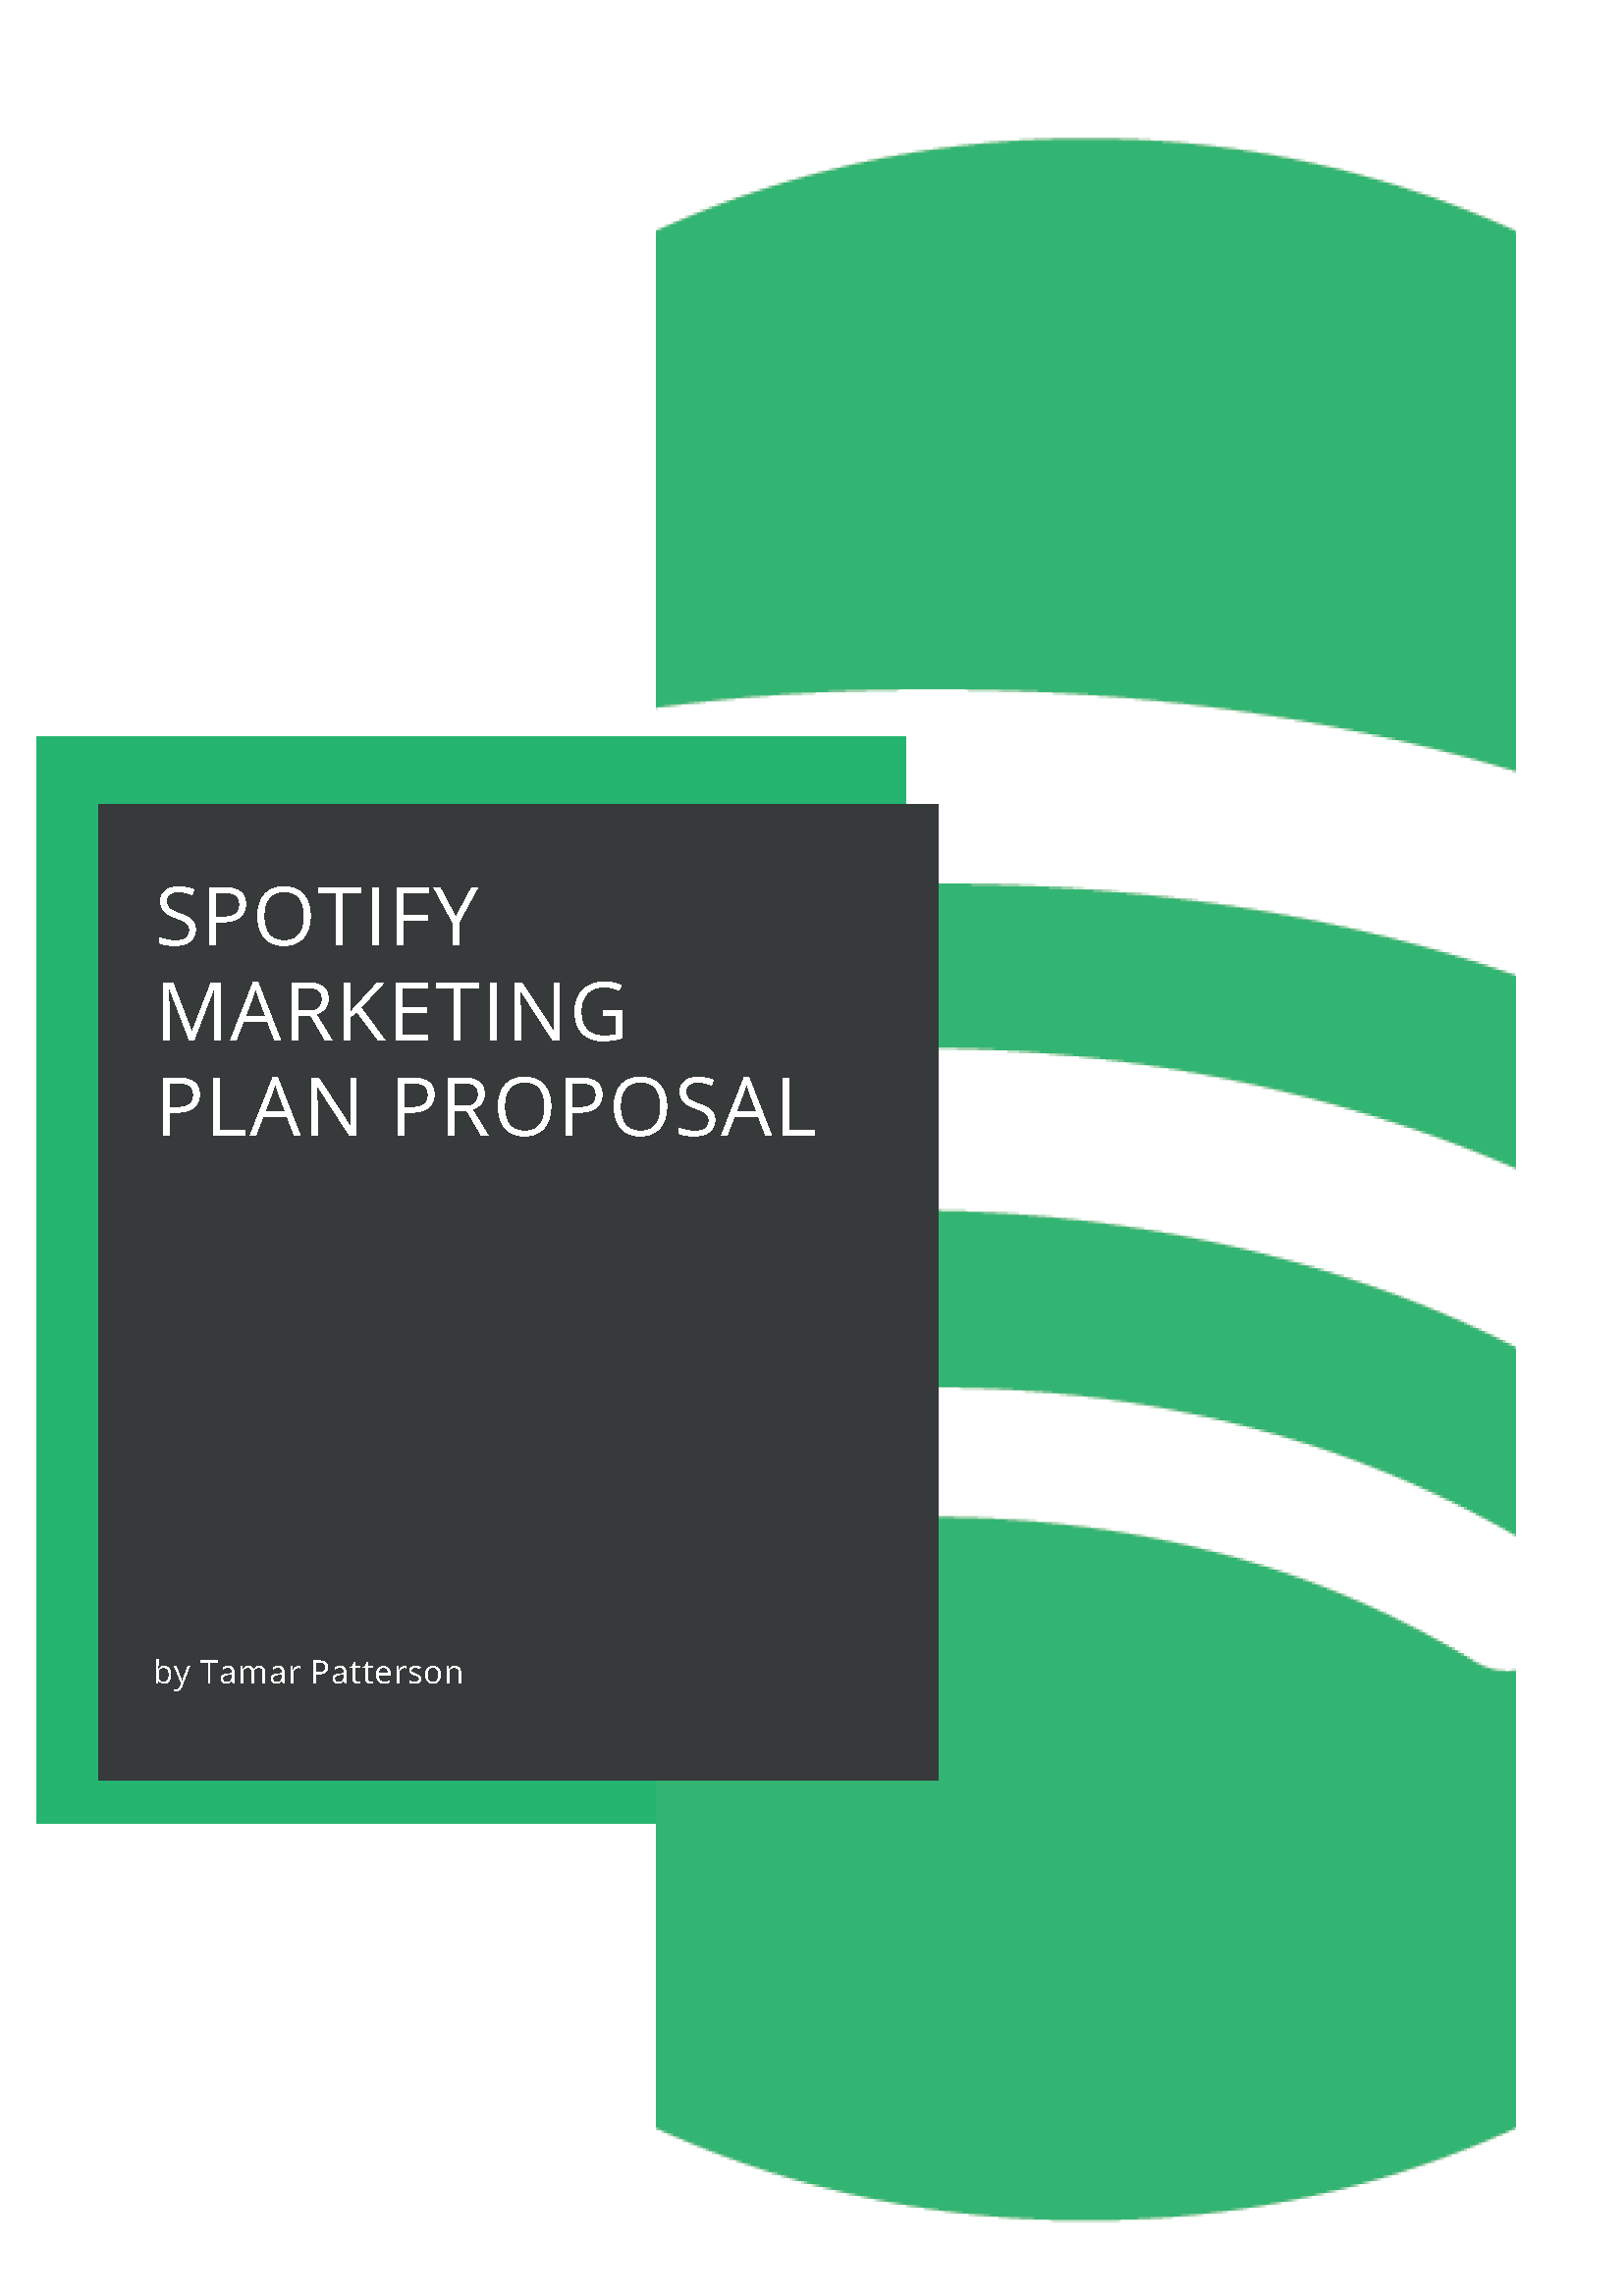 Spotify marketing proposal by Tamar Patterson.